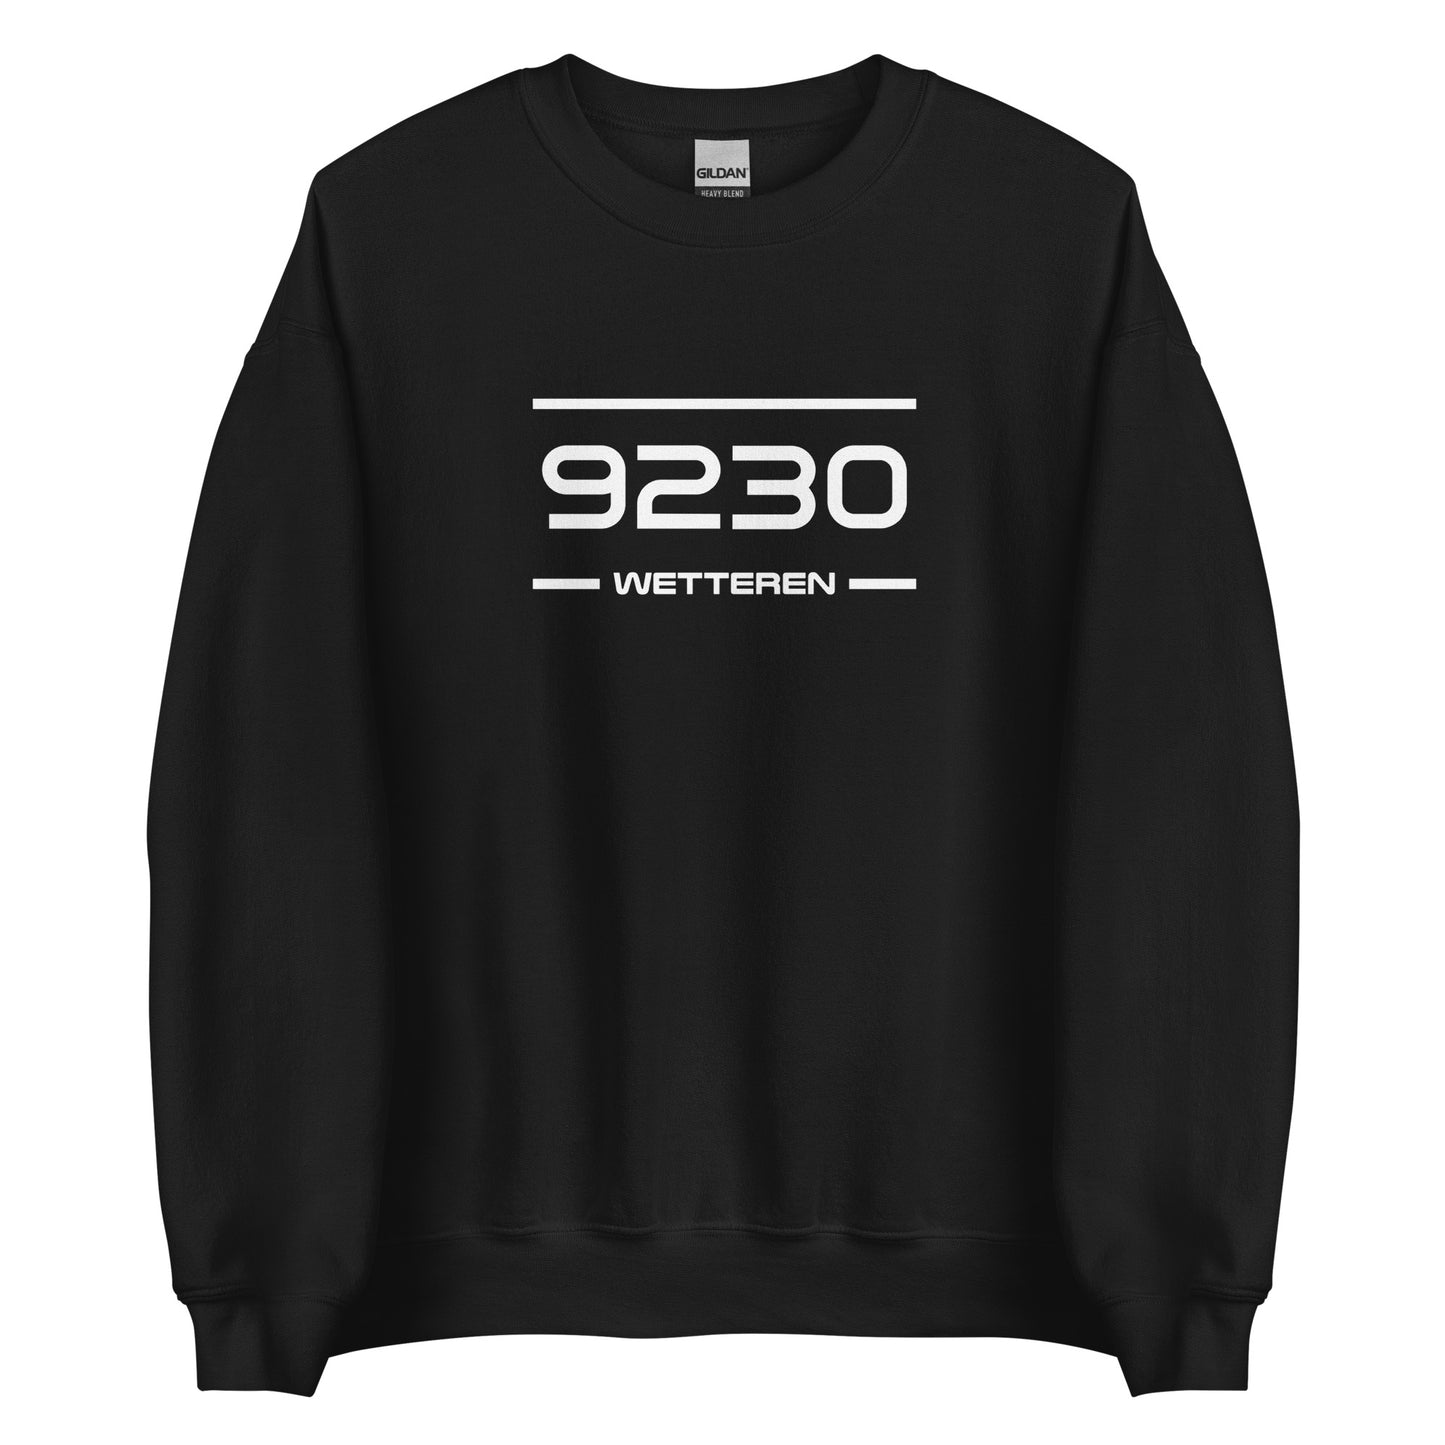 Sweater - 9230 - Wetteren (M/V)